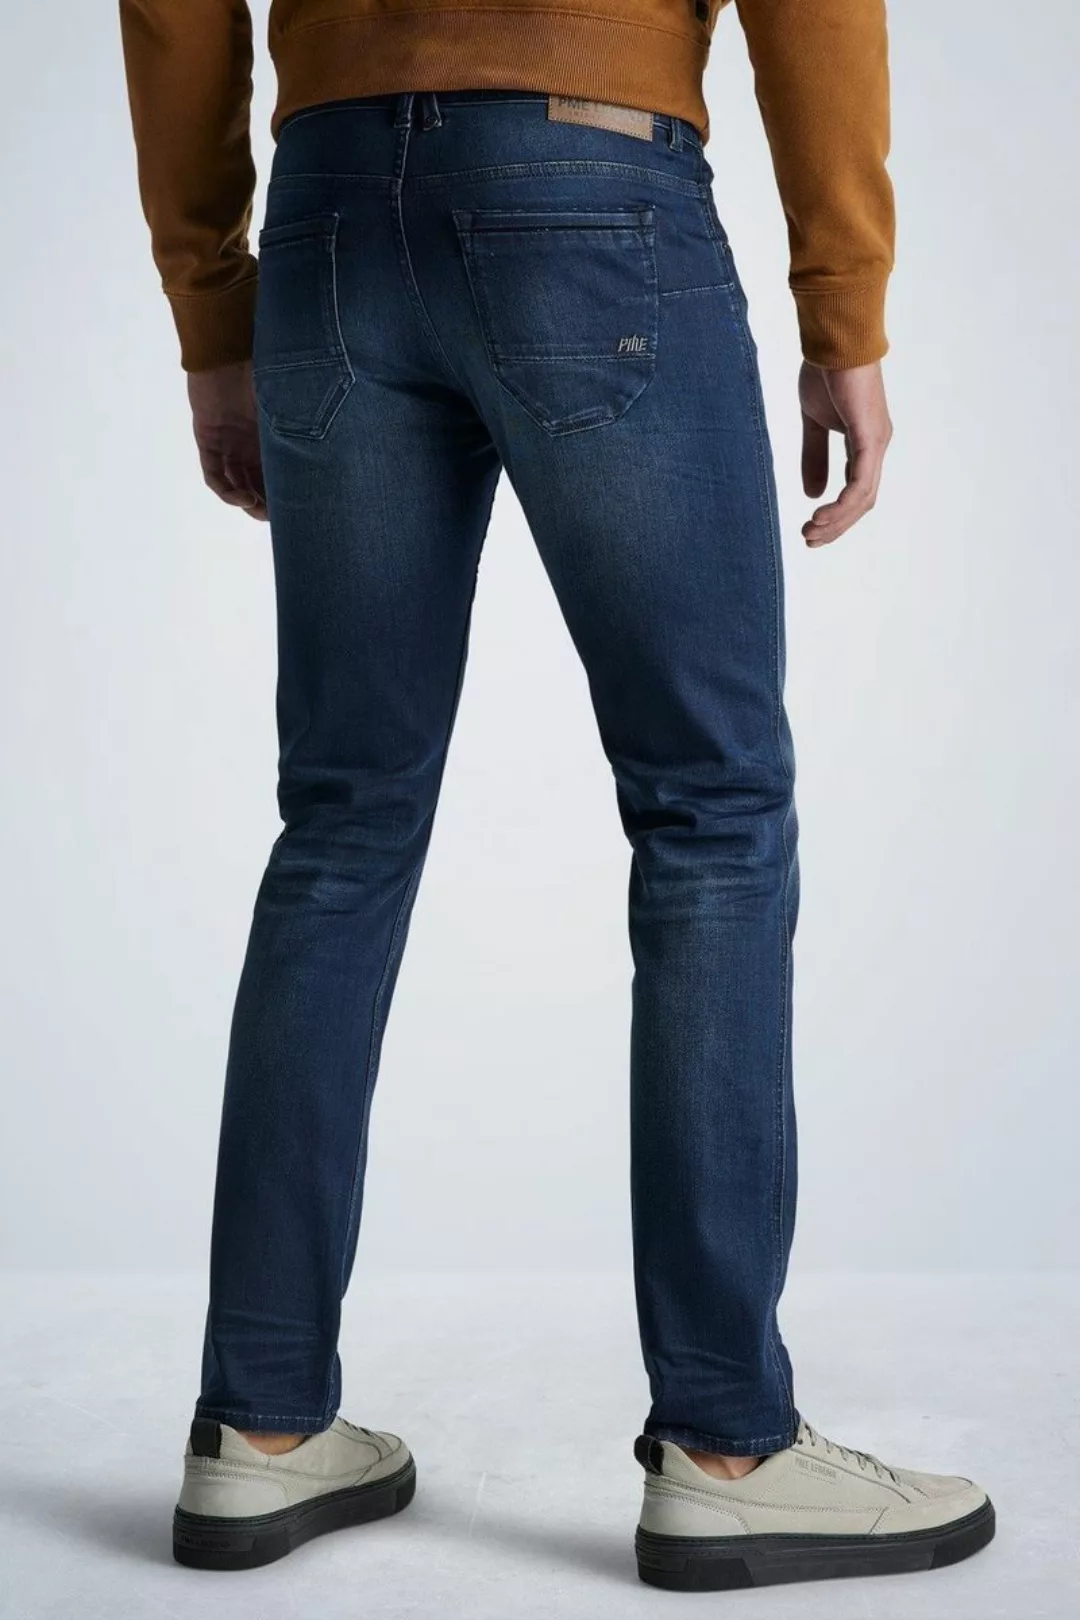 PME Legend Nightflight Jeans Dunkelblau NBW - Größe W 33 - L 34 günstig online kaufen